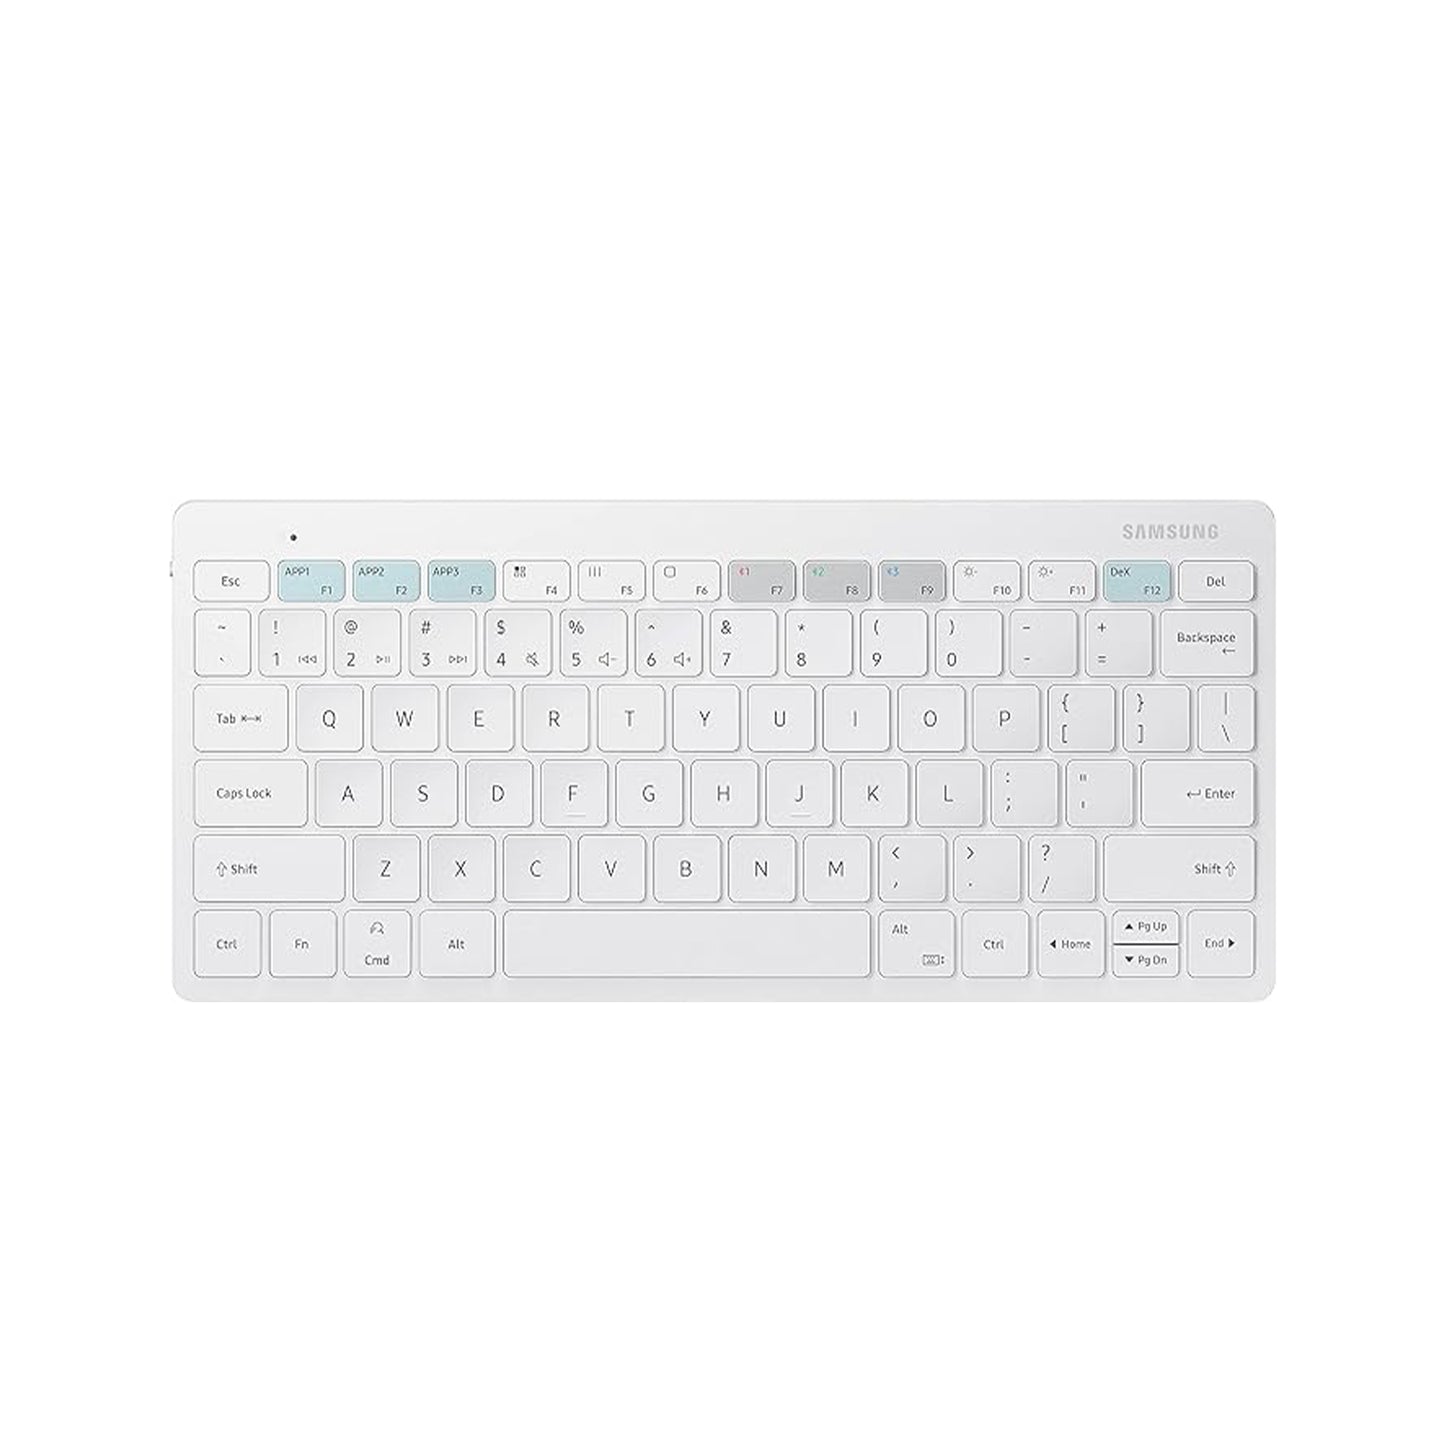 لوحة المفاتيح الذكية الرسمية سامسونج تريو 500 (EJ-B3400UWEGUS)، أبيض - موديل أمريكي 